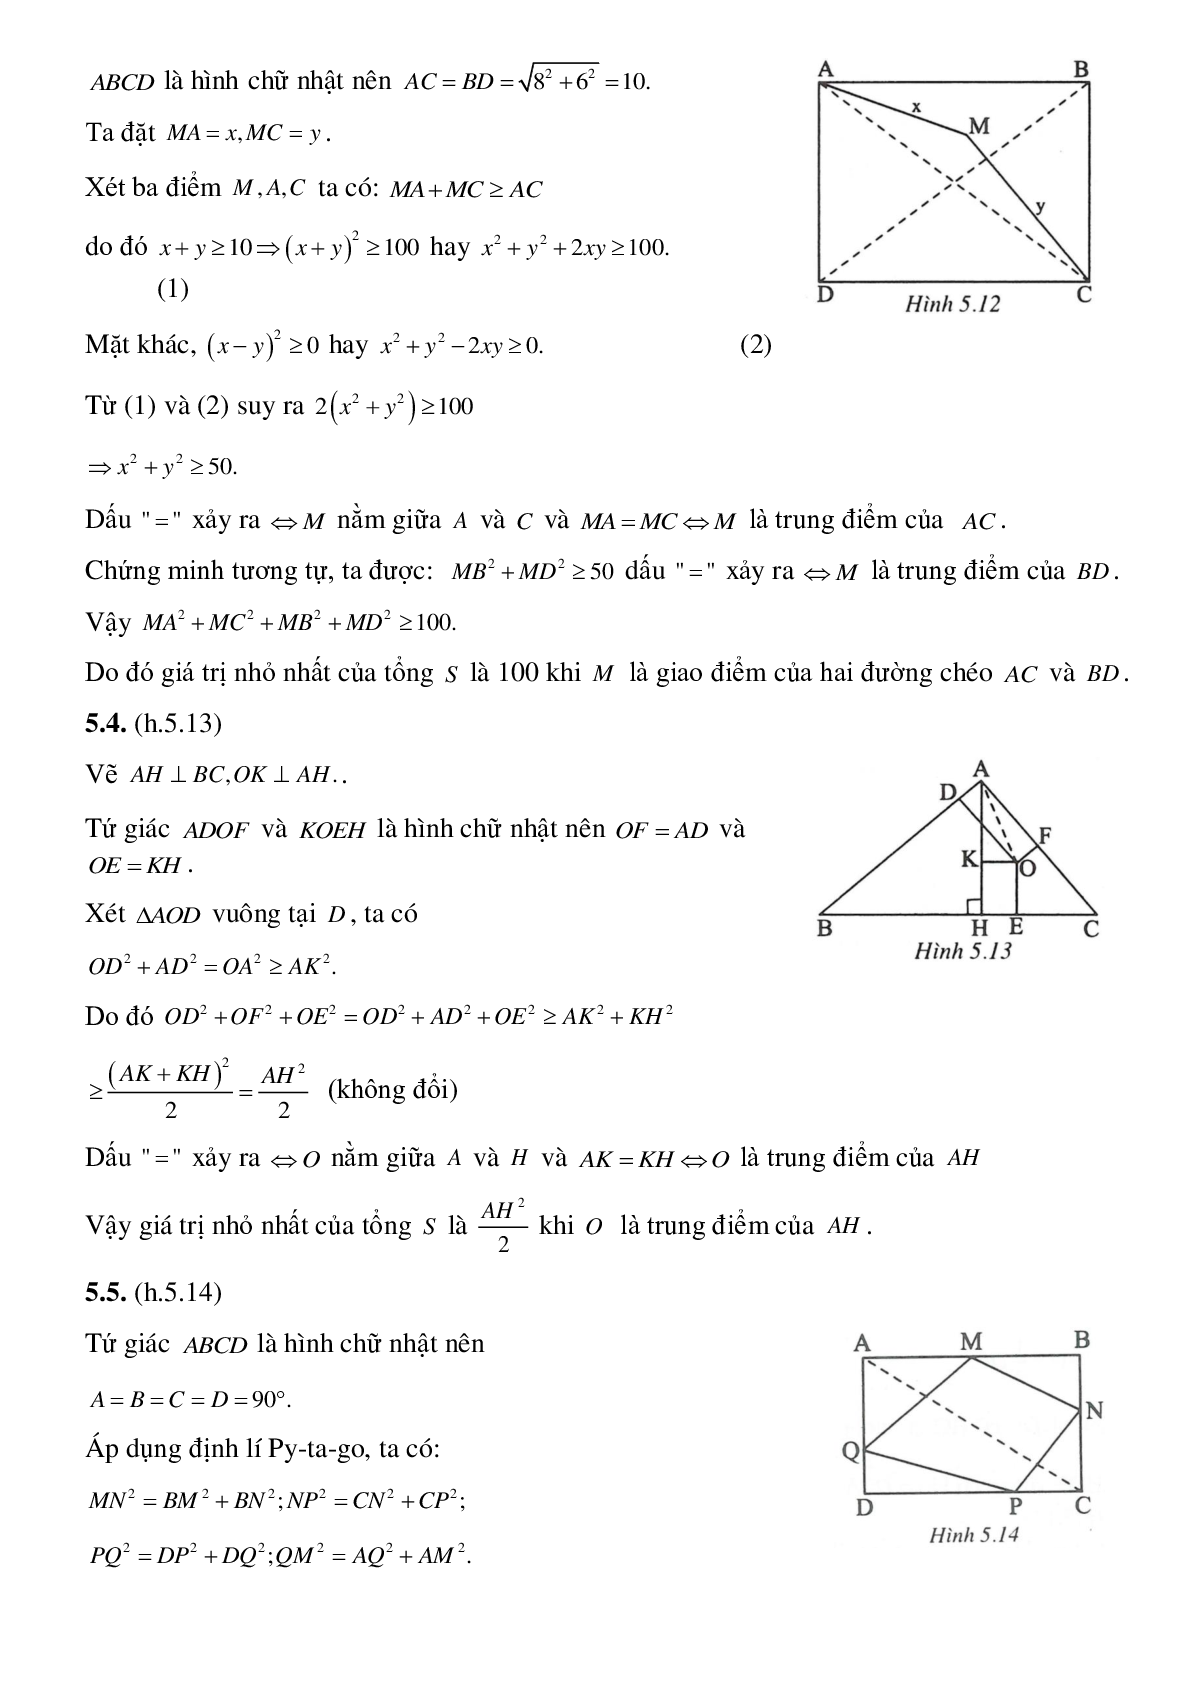 Hình chữ nhật, tính chất của các điểm cách đều một đường thẳng cho trước (trang 7)